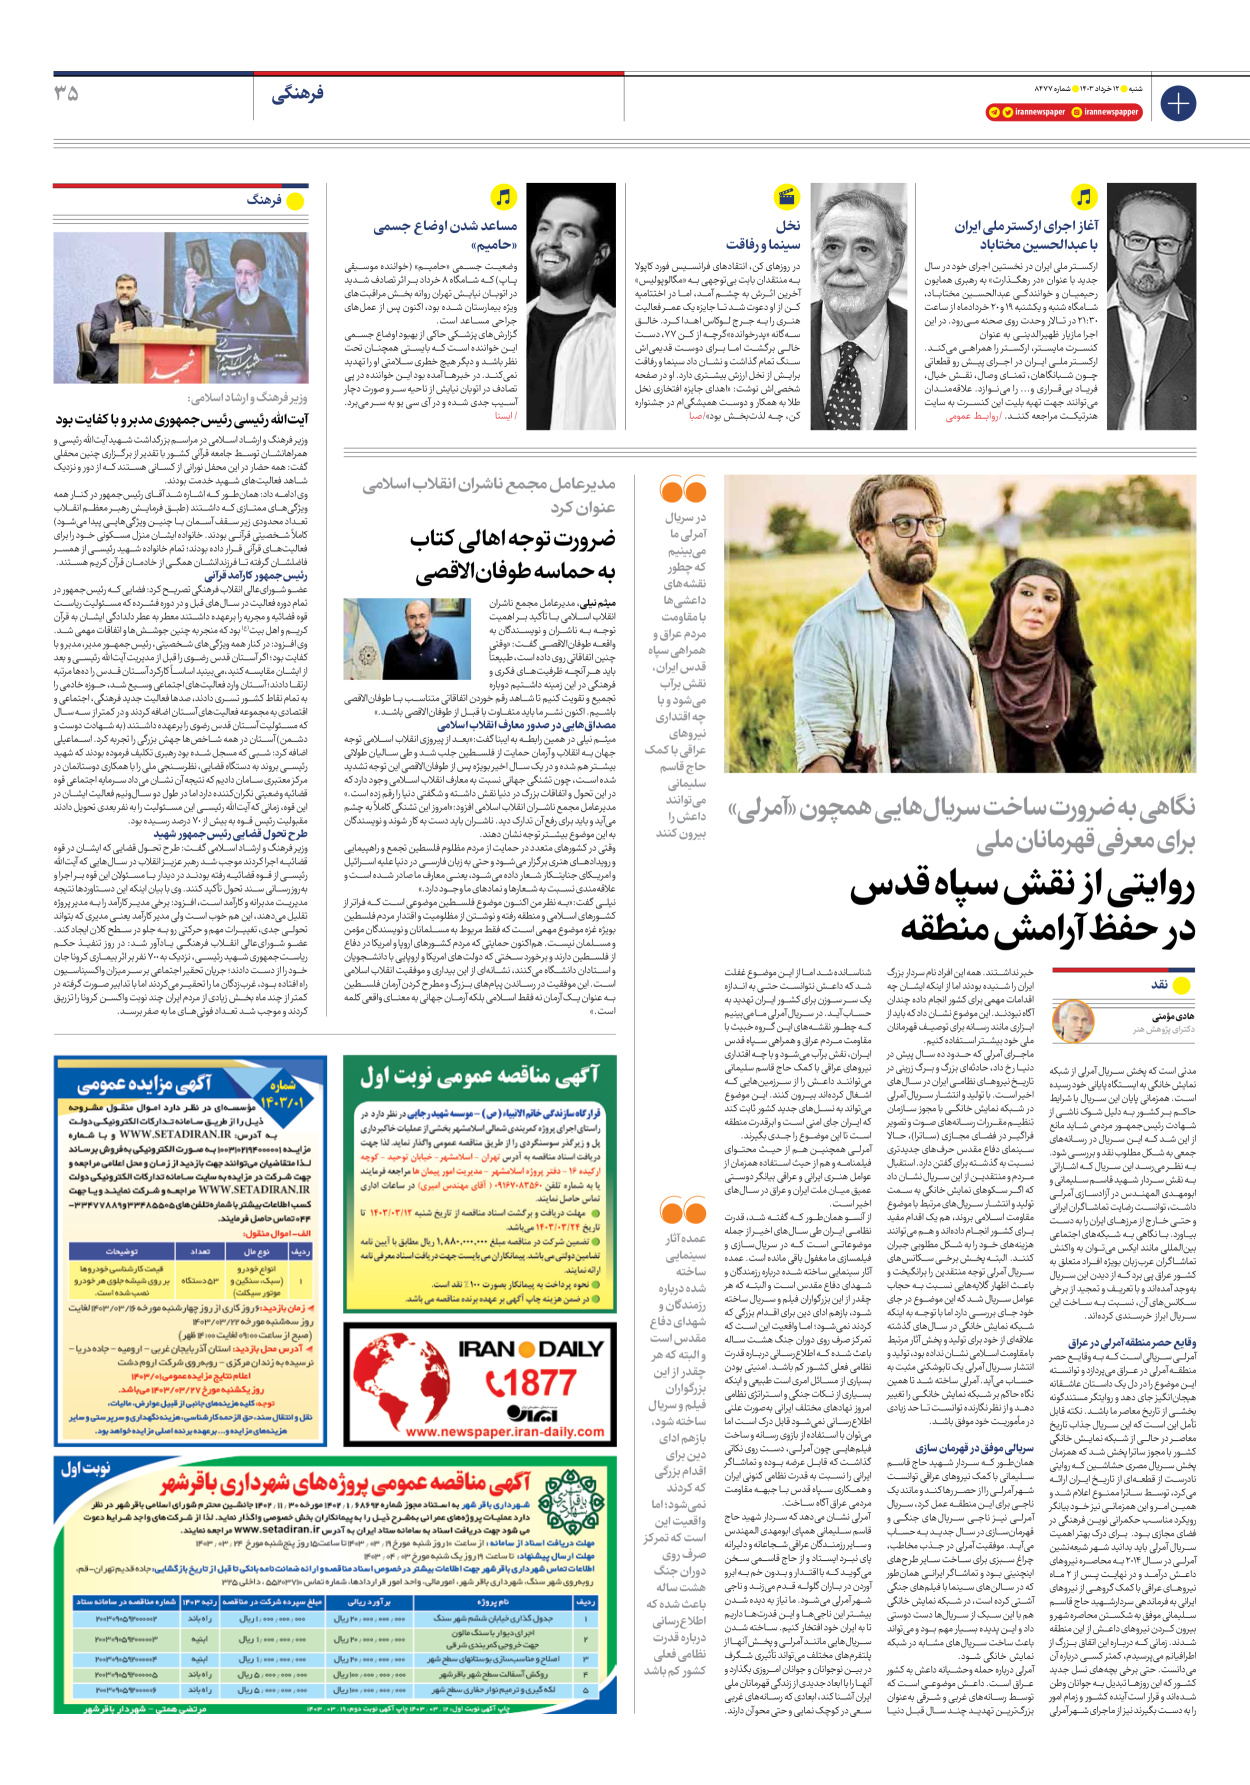 روزنامه ایران - شماره هشت هزار و چهارصد و هفتاد و هفت - ۱۲ خرداد ۱۴۰۳ - صفحه ۳۵